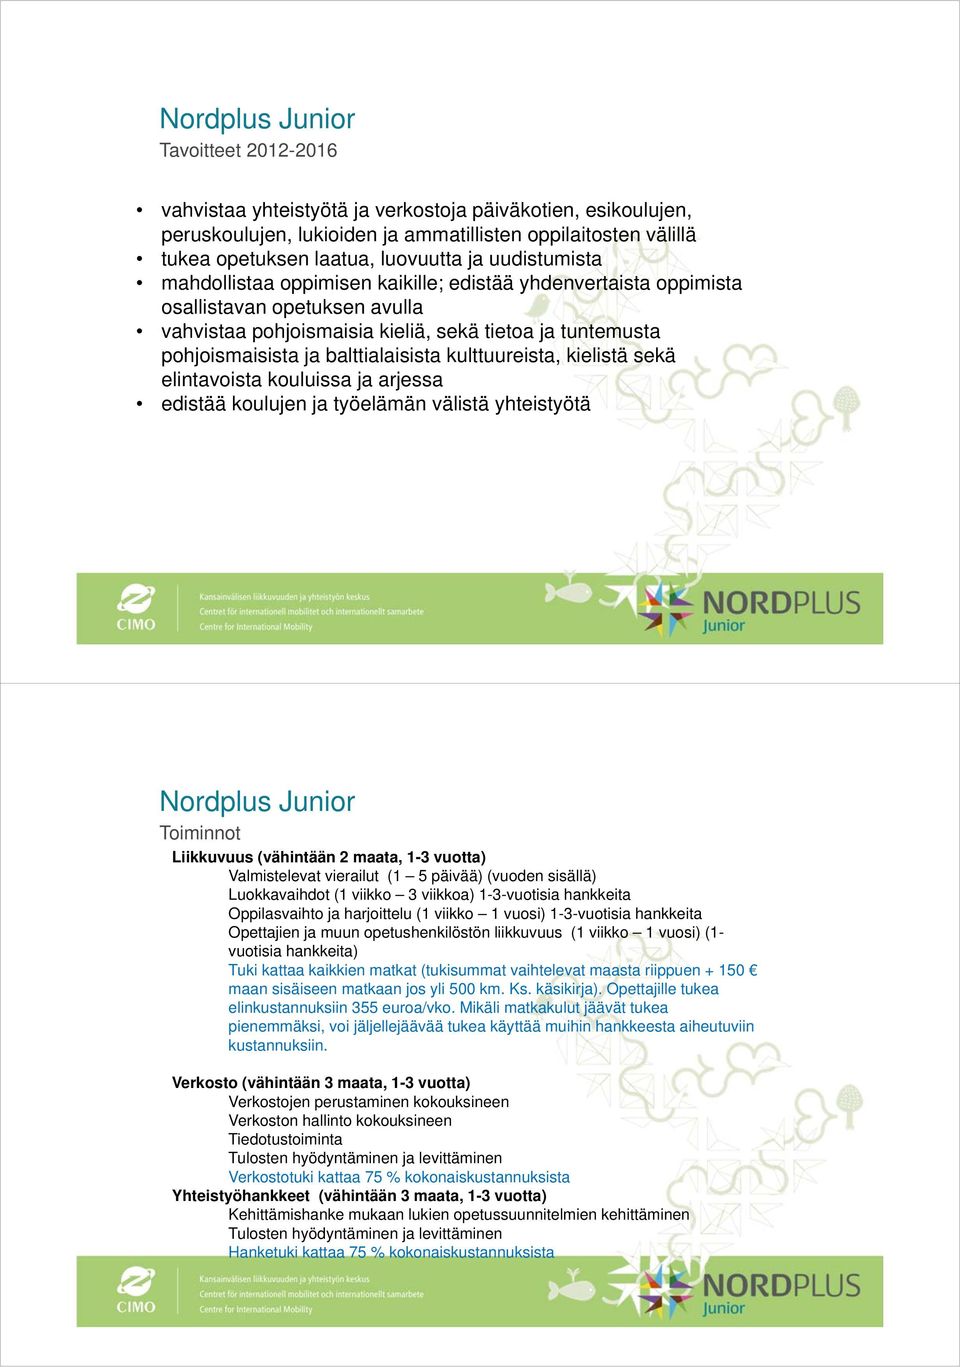 balttialaisista kulttuureista, kielistä sekä elintavoista kouluissa ja arjessa edistää koulujen ja työelämän välistä yhteistyötä Nordplus Junior Toiminnot Liikkuvuus (vähintään 2 maata, 1-3 vuotta)